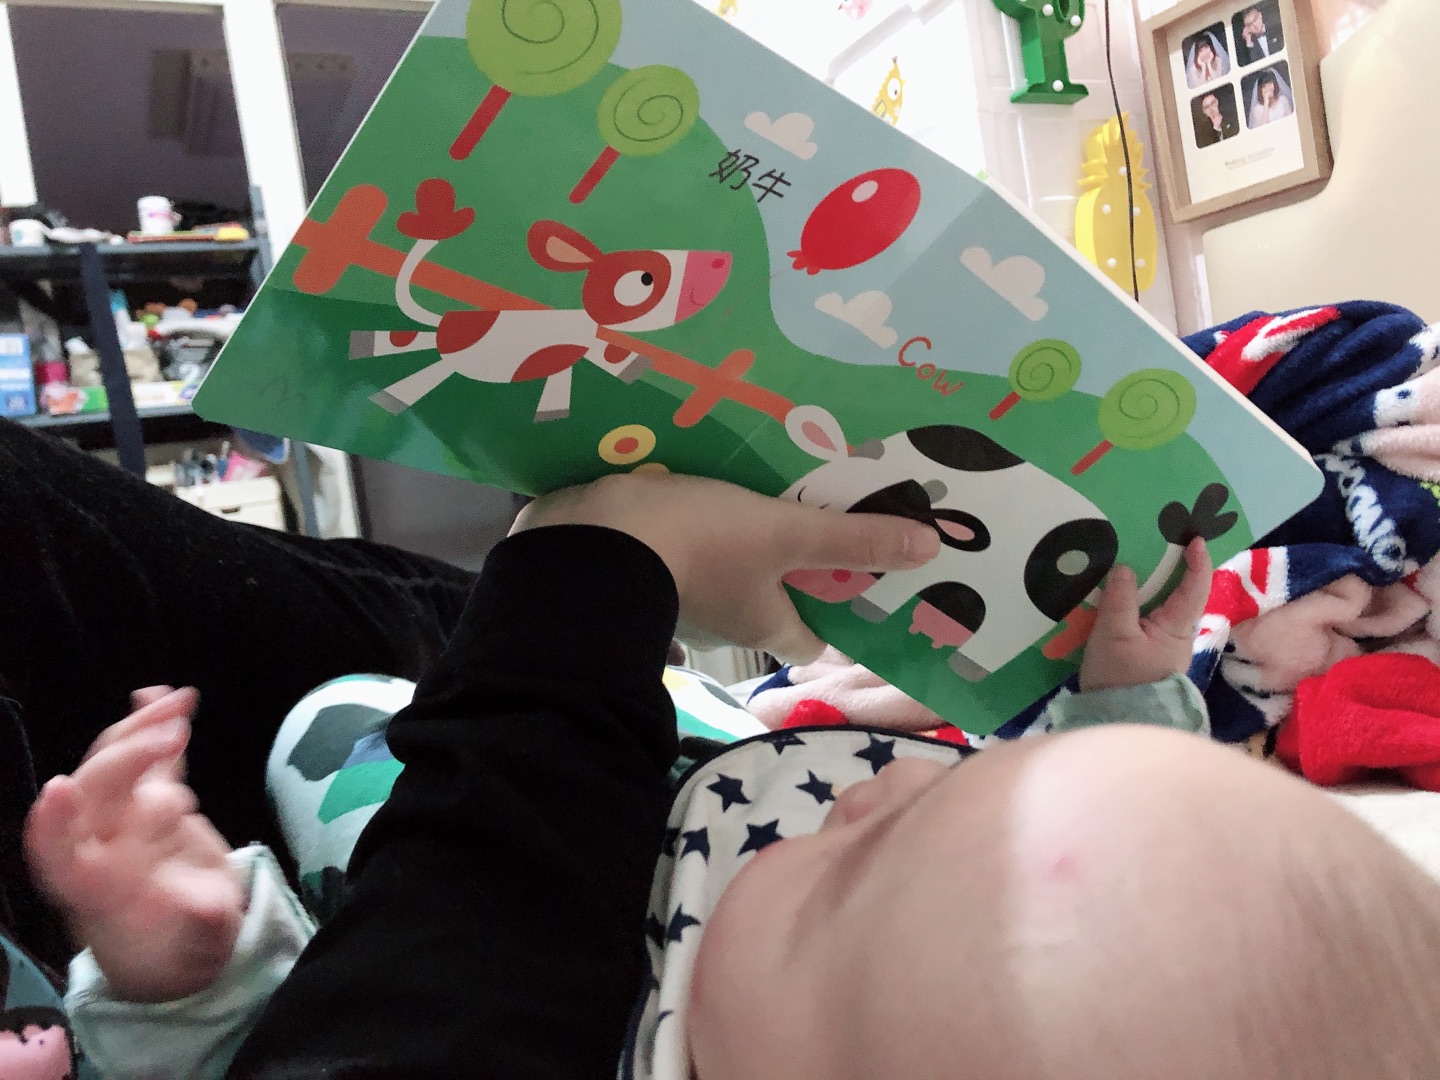 声音比较#真，蛮好玩的一本书，五个月的宝宝，偶尔来给宝宝偶尔听一下不错的。